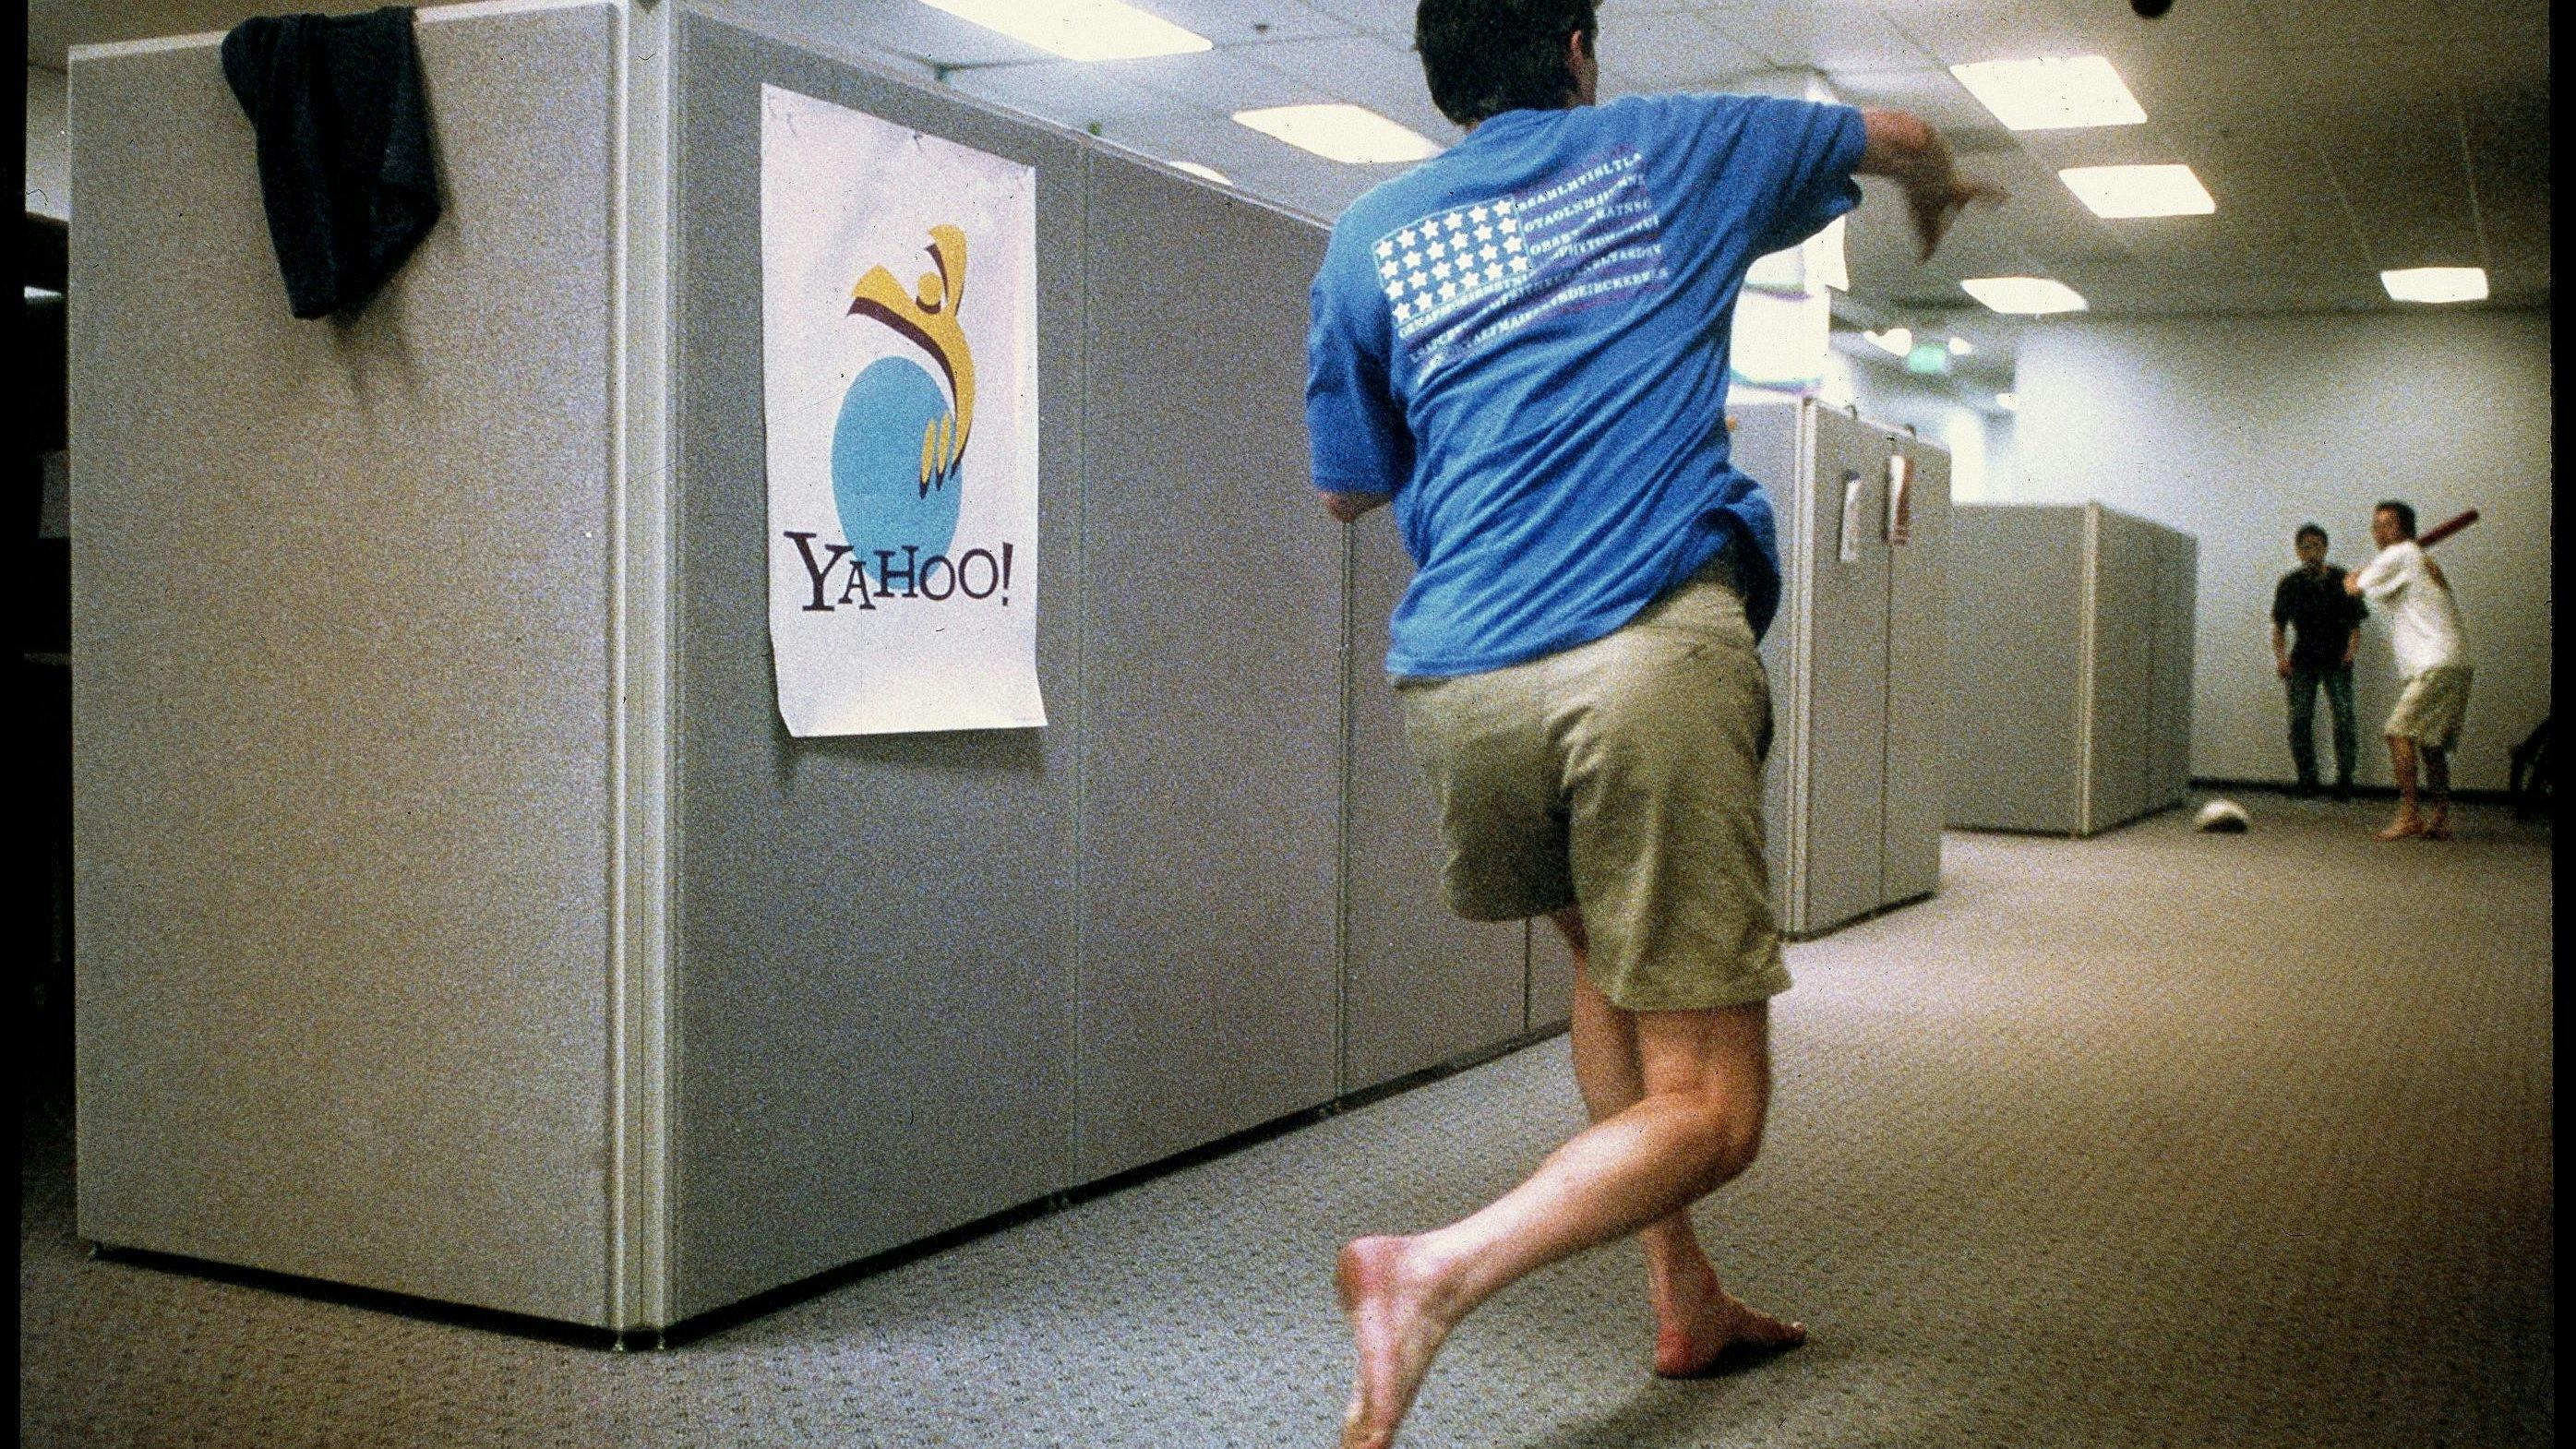 David Filo, einer der Gründer von Yahoo!, wirft Eric Ng einen Pitch zu, während Joonsuk Bae die Fängerrolle übernimmt. Die drei machen gegen Mitternacht eine Pause bei Yahoo! in Sunnyvale, Kalifornien, am 24. Mai 1996. 